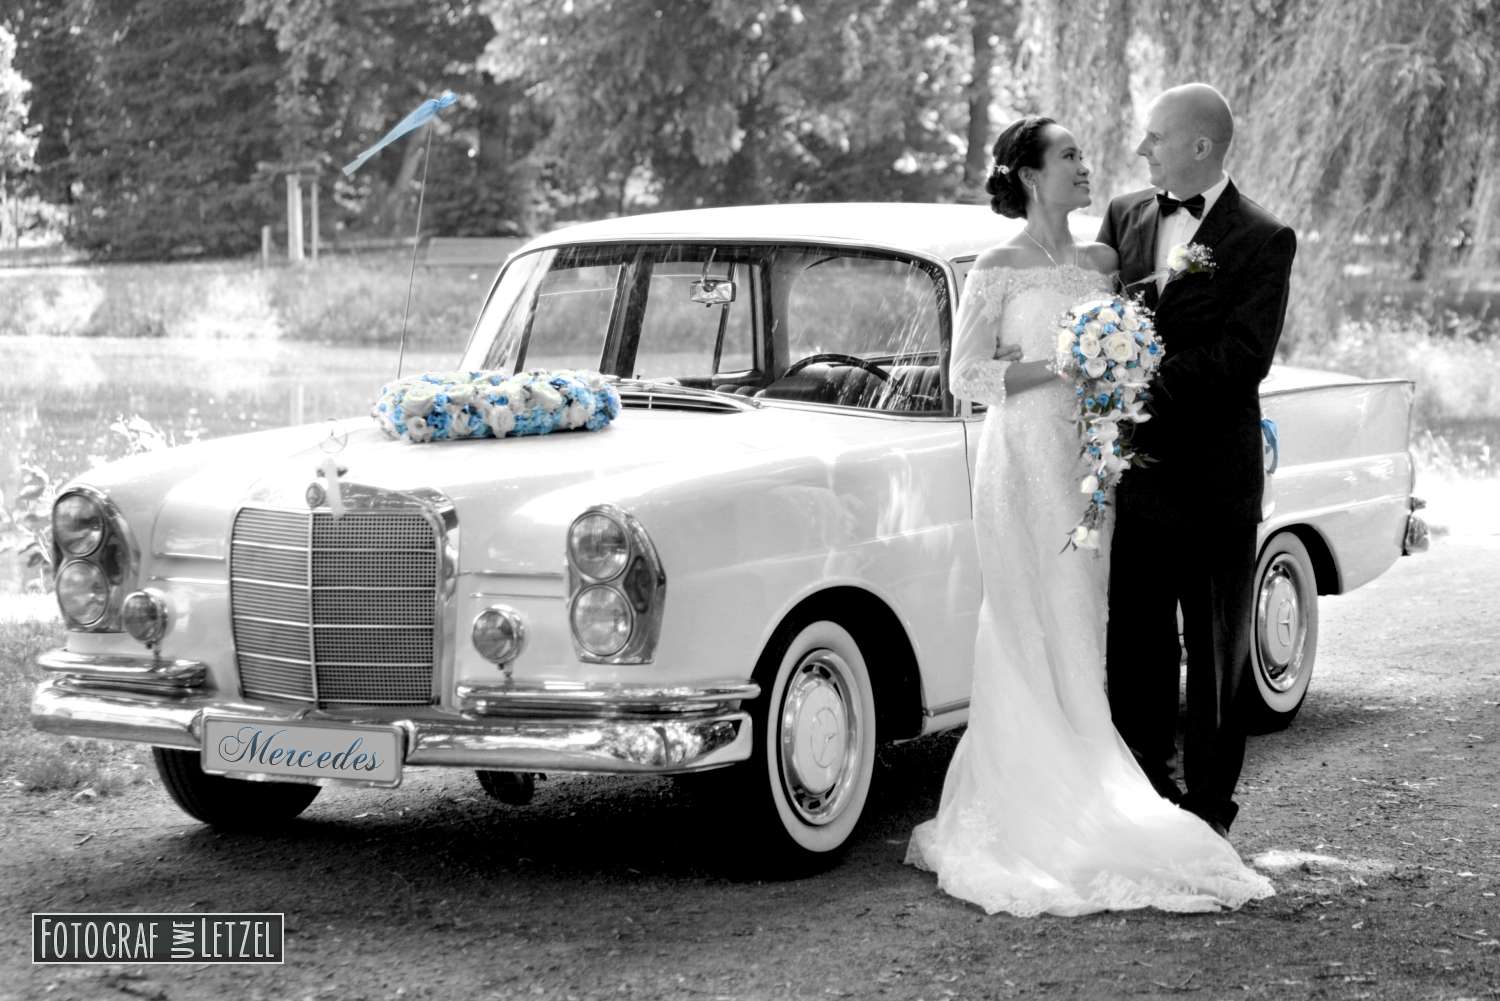 Mercedes Hochzeitsauto mieten (Hochzeitslimousine)